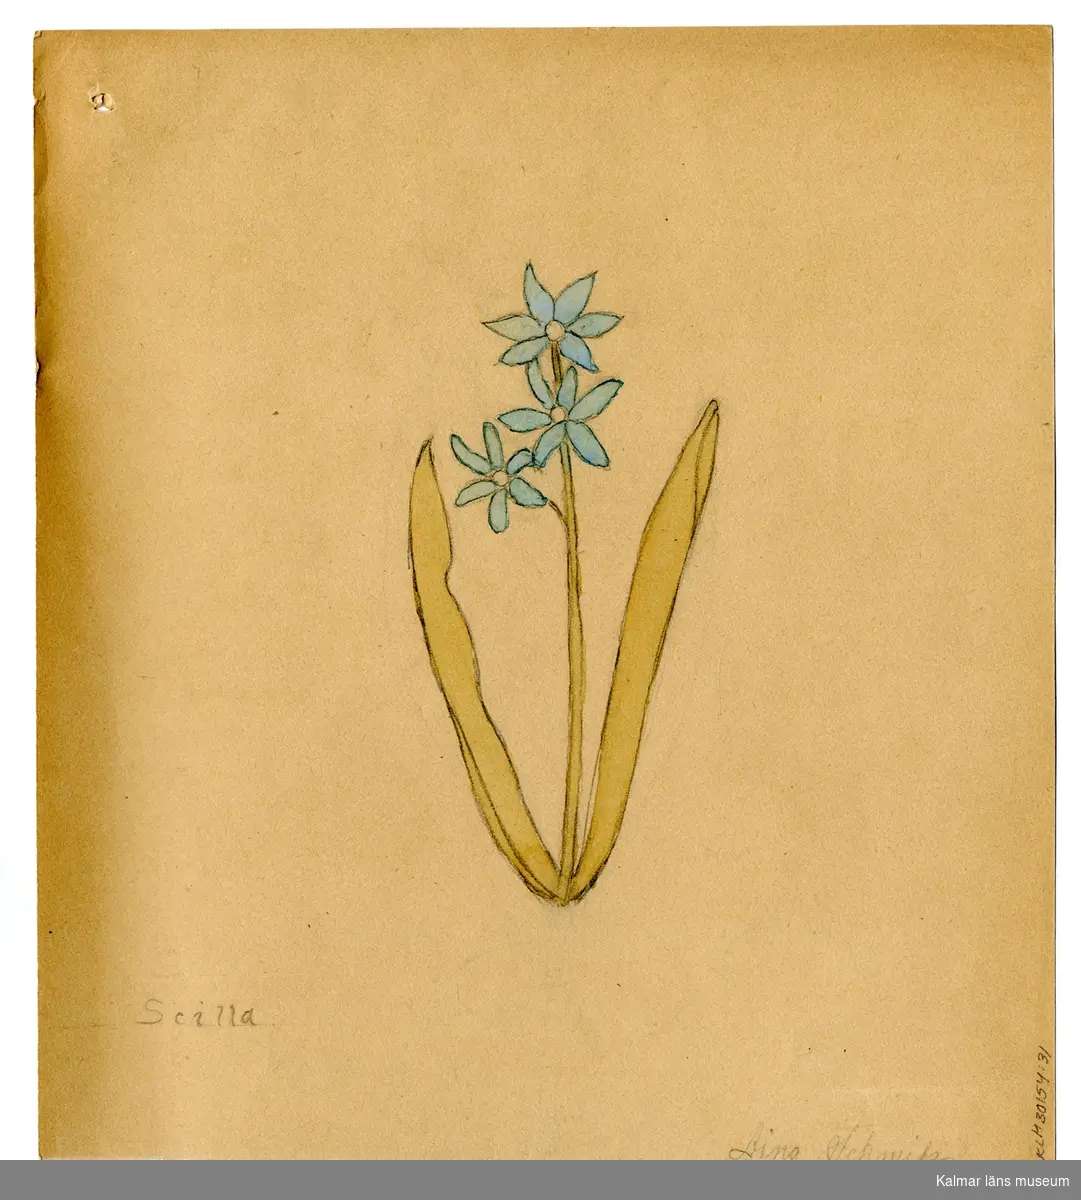 En blå blomma, Scilla.